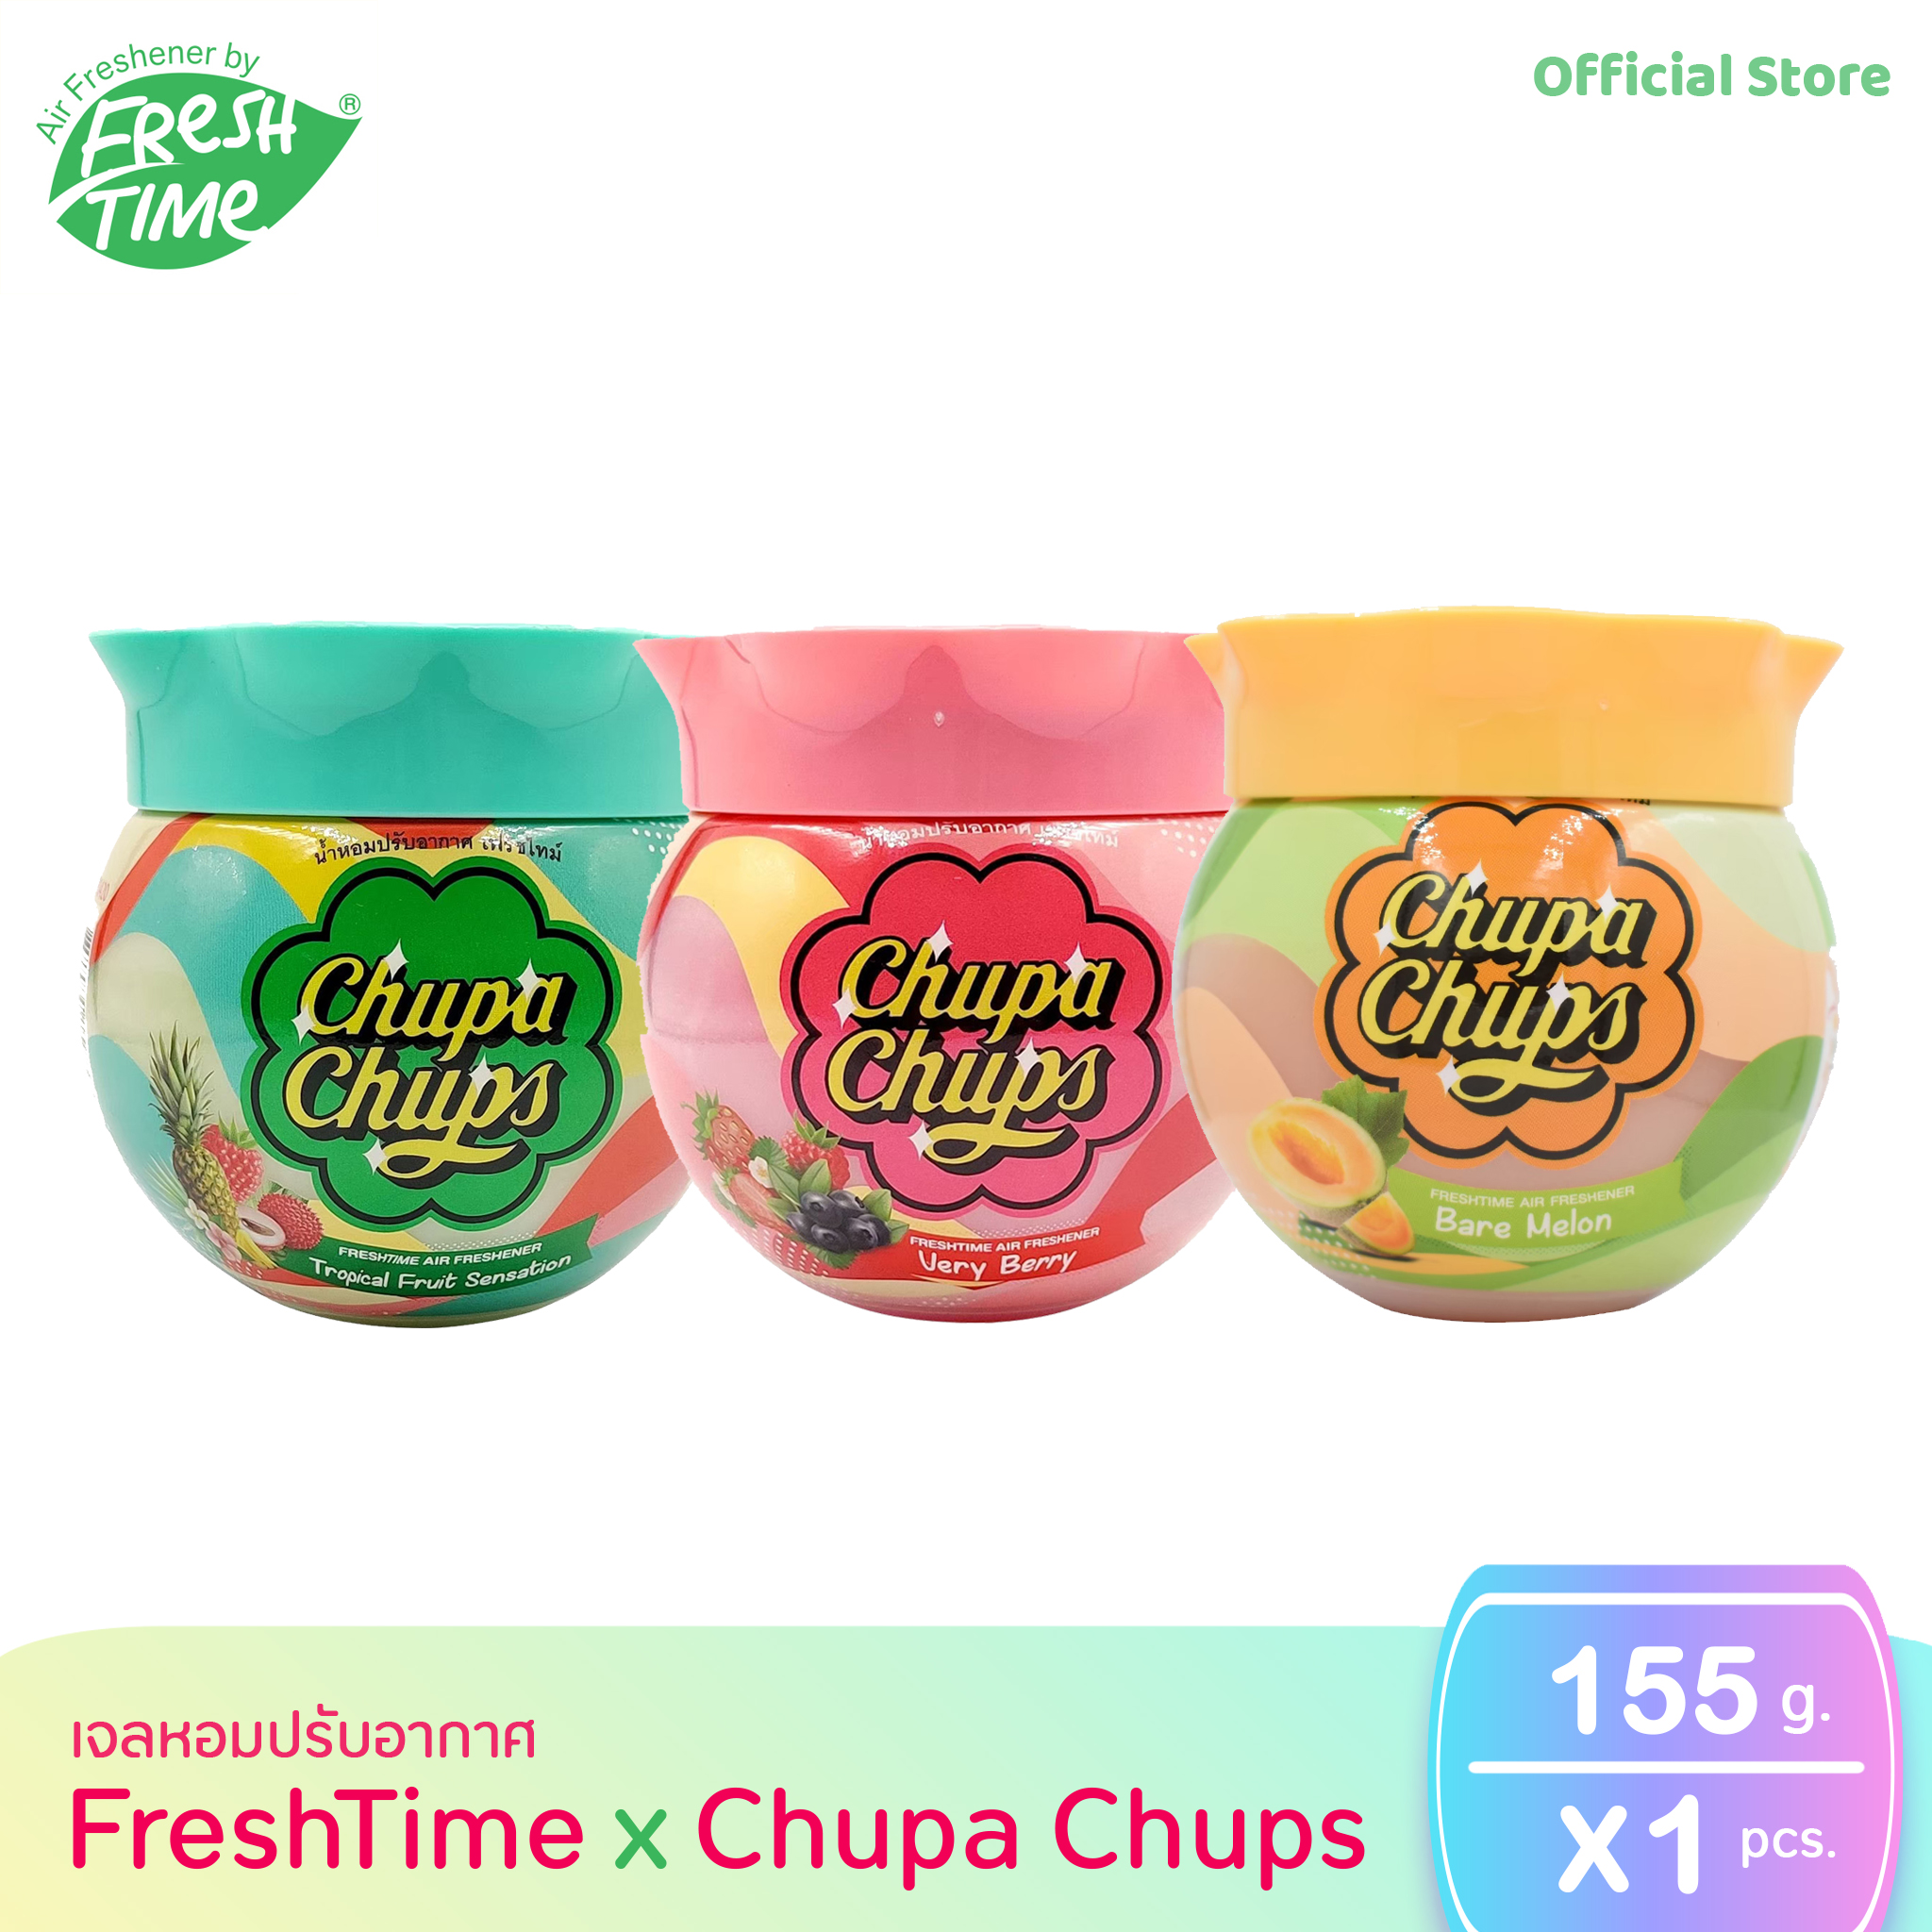 Chupa Chups จูปาจุ๊ปส์ น้ำหอมปรับอากาศเฟรชไทม์ (Freshtime) มี 3 กลิ่นให้เลือก ขนาด 155g. กลิ่นหอมยาวนาน แพ็คเกจน่ารัก